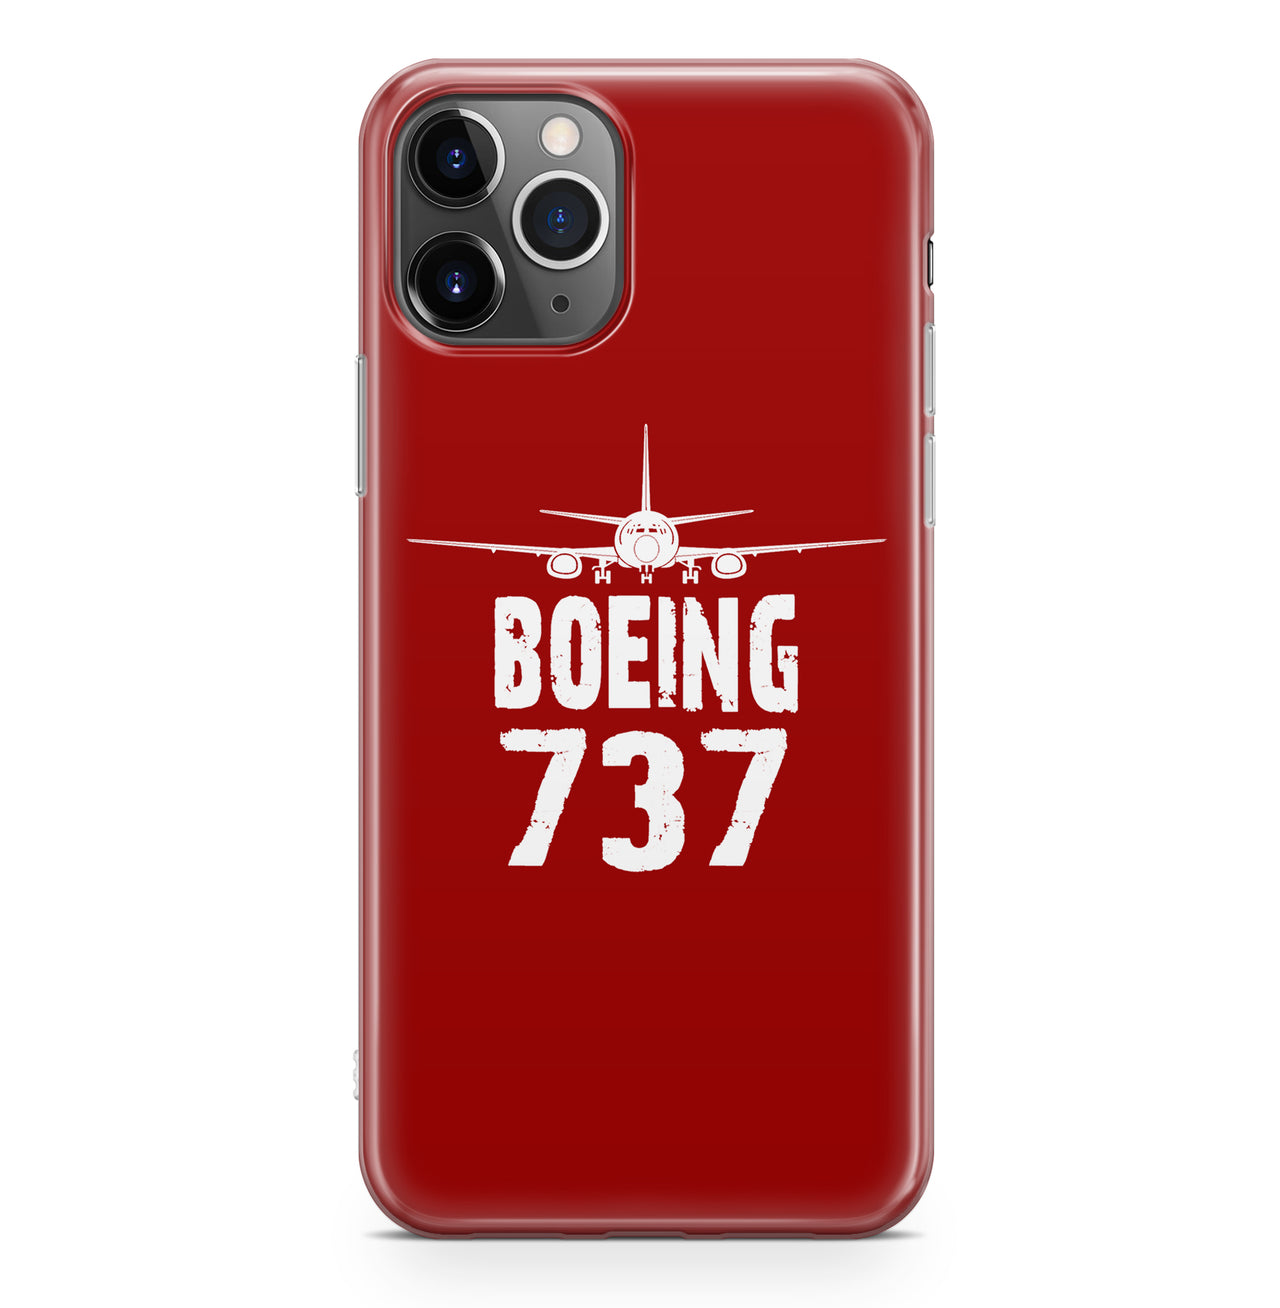 Boeing 737 & Plane Designed iPhone Cases